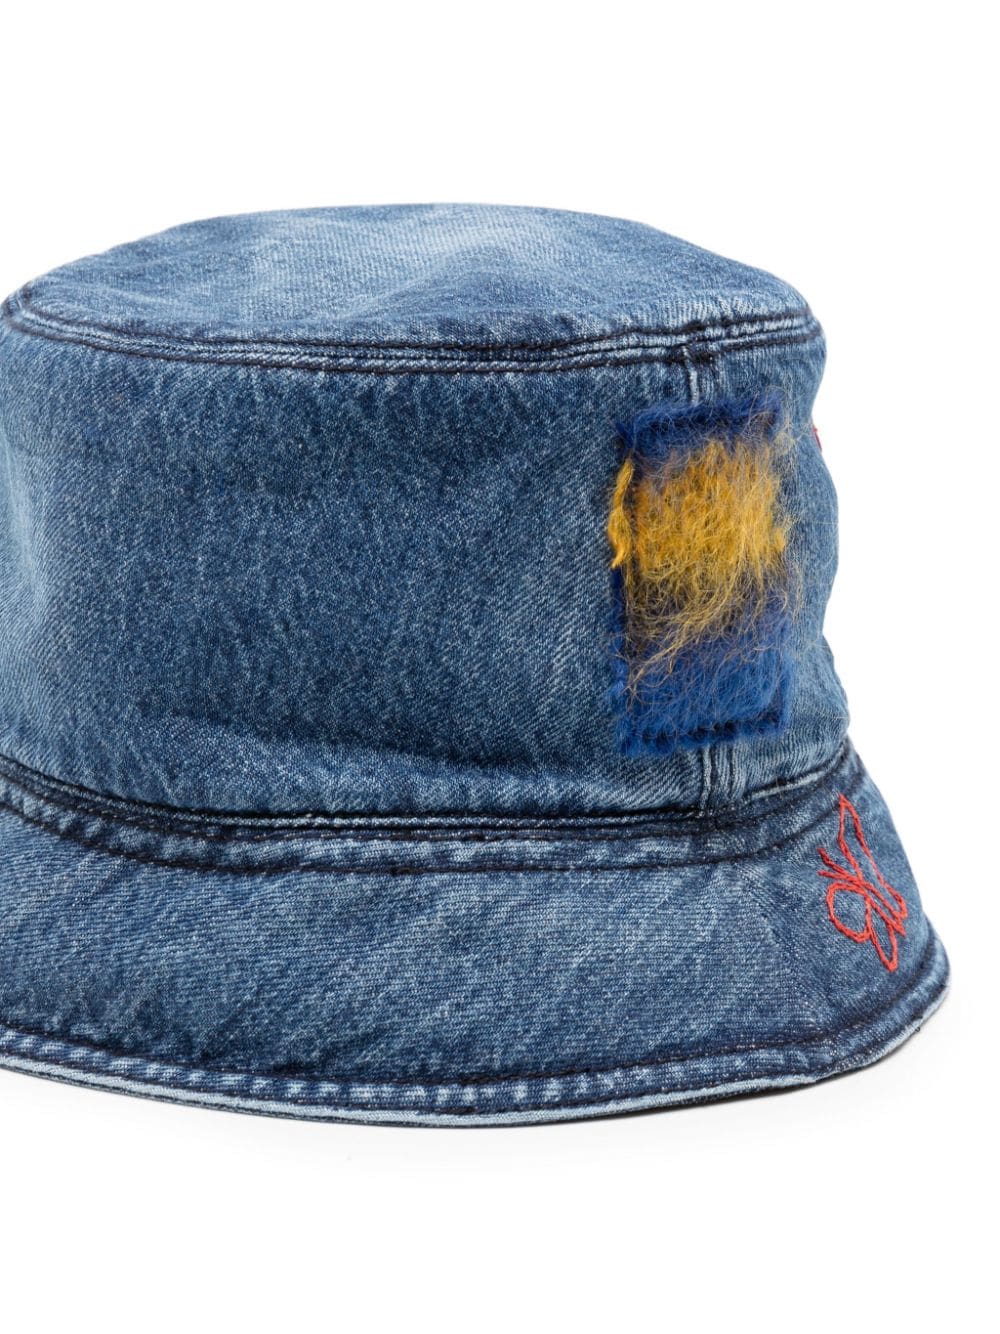 Marni embroidered denim bucket hat - Blauw